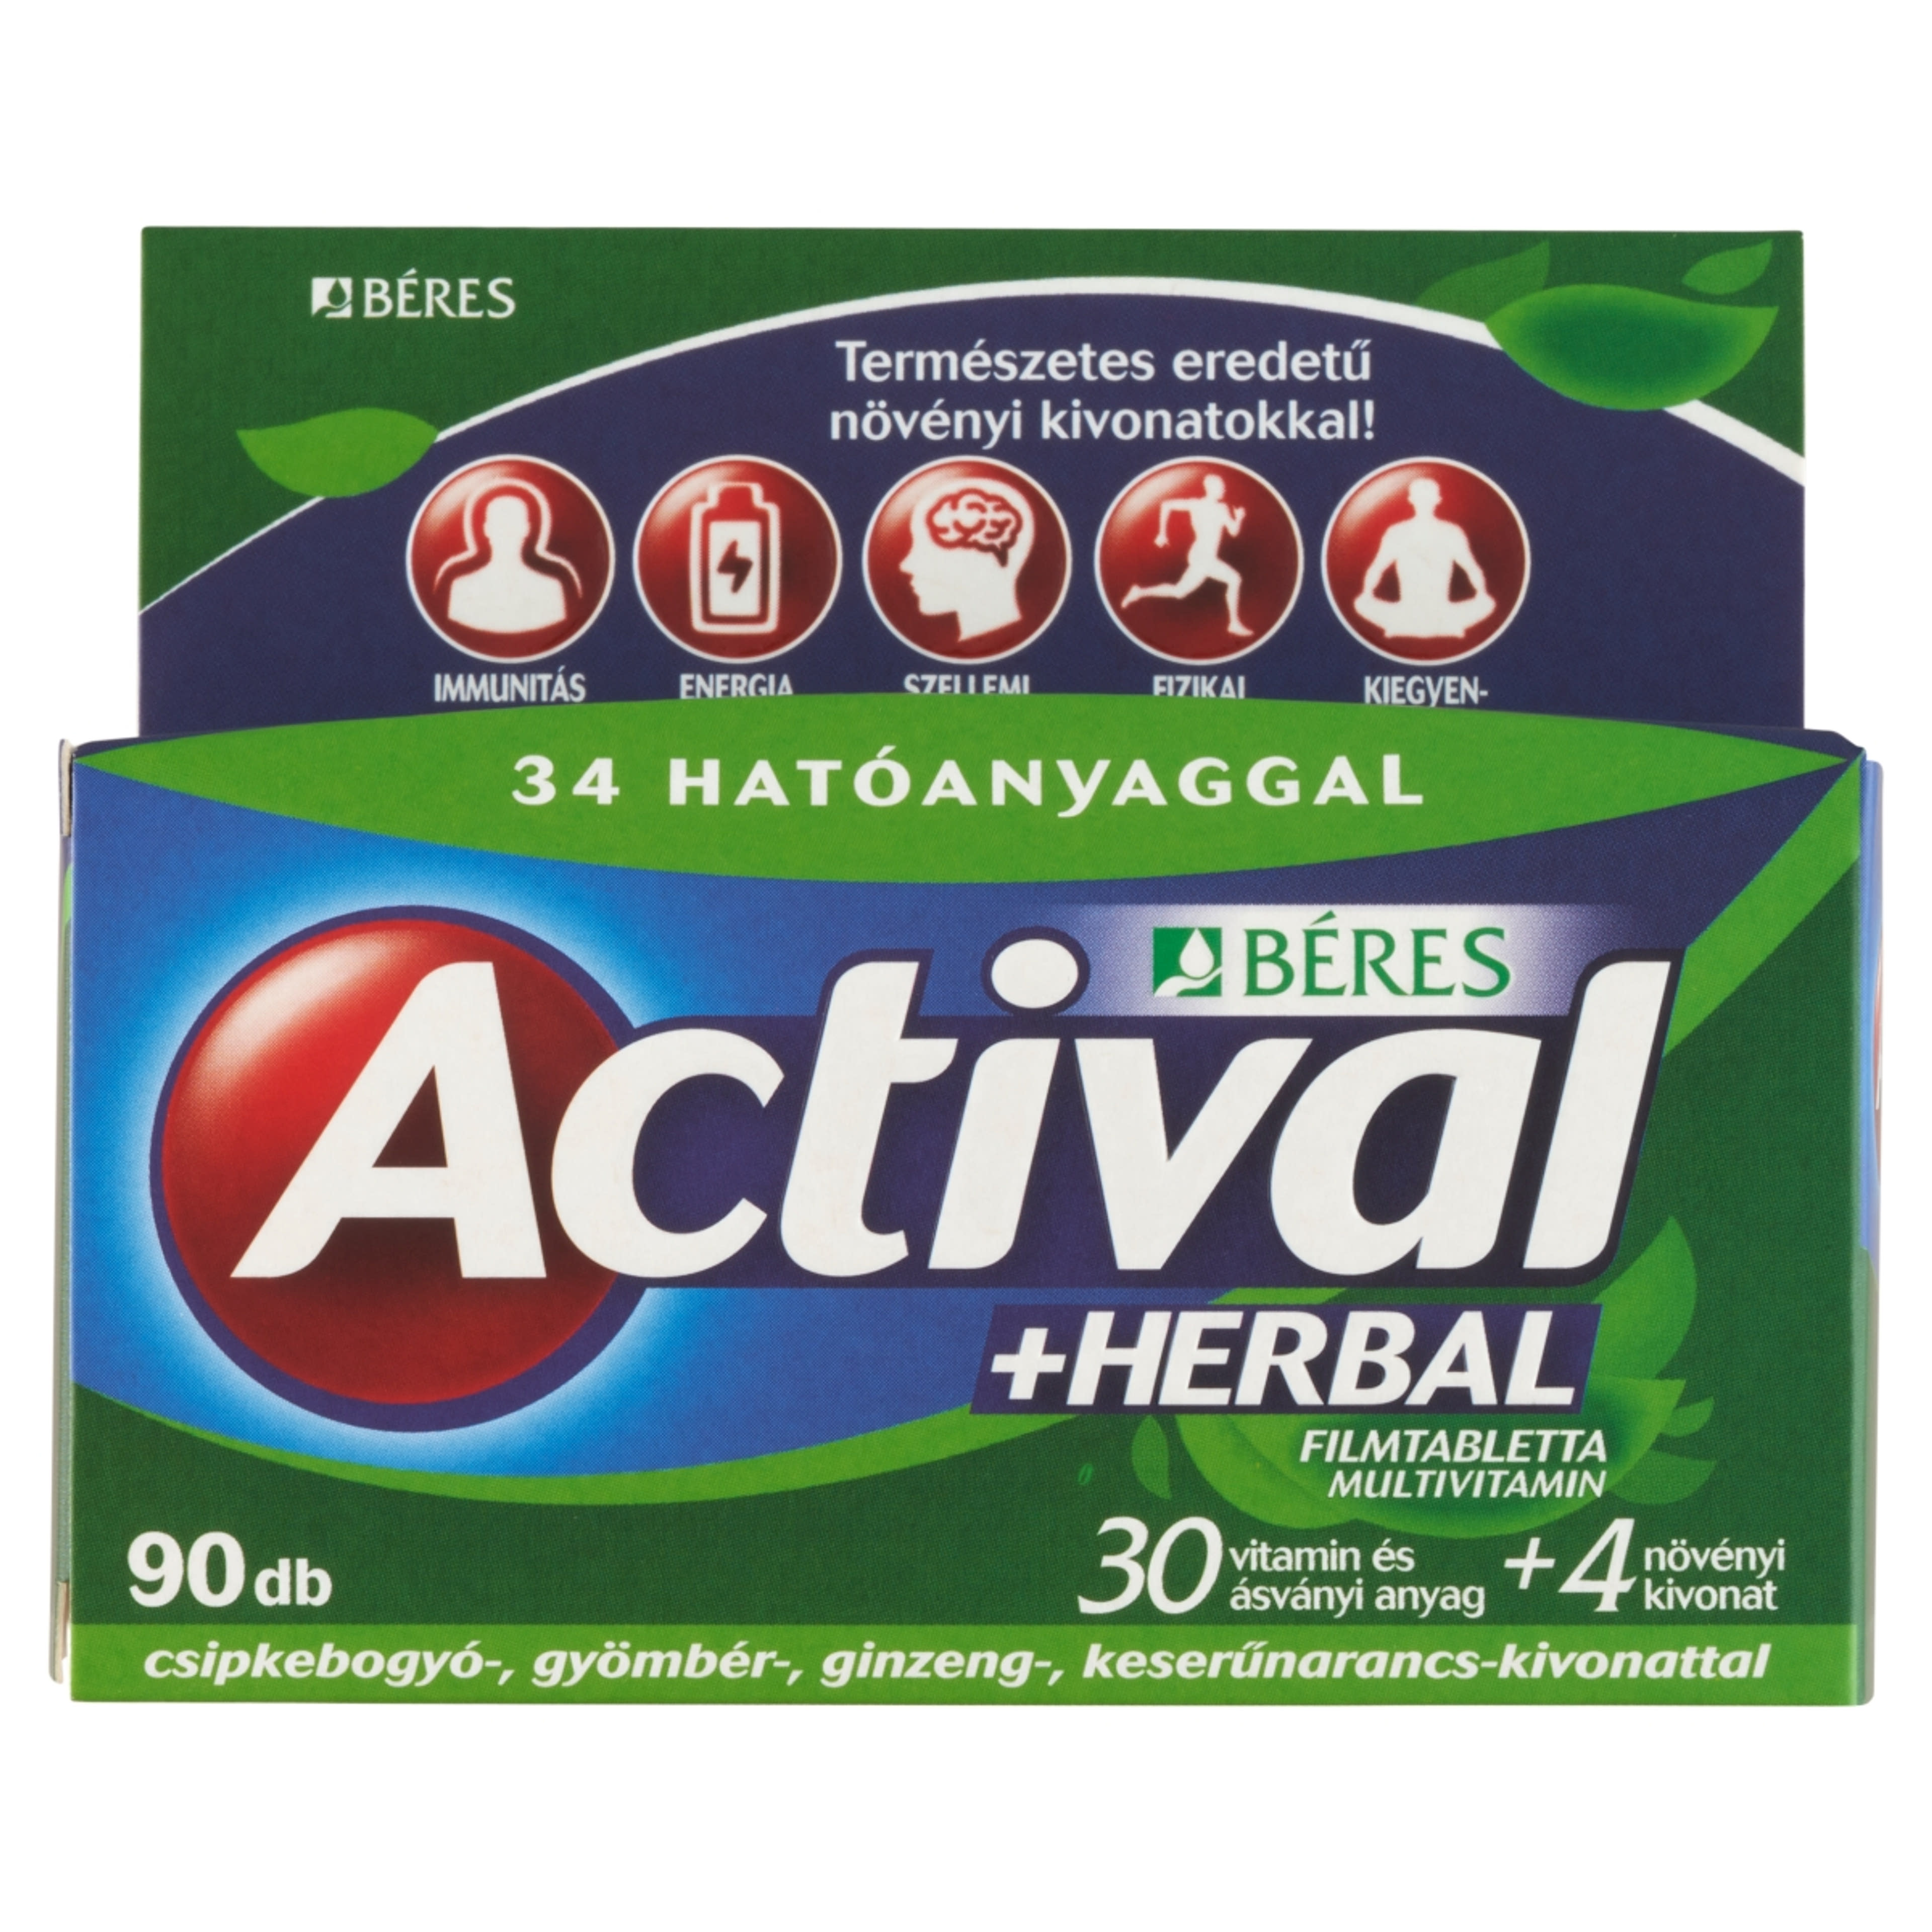 Actival Herbal multivitamin filmtabletta - 90 db-2